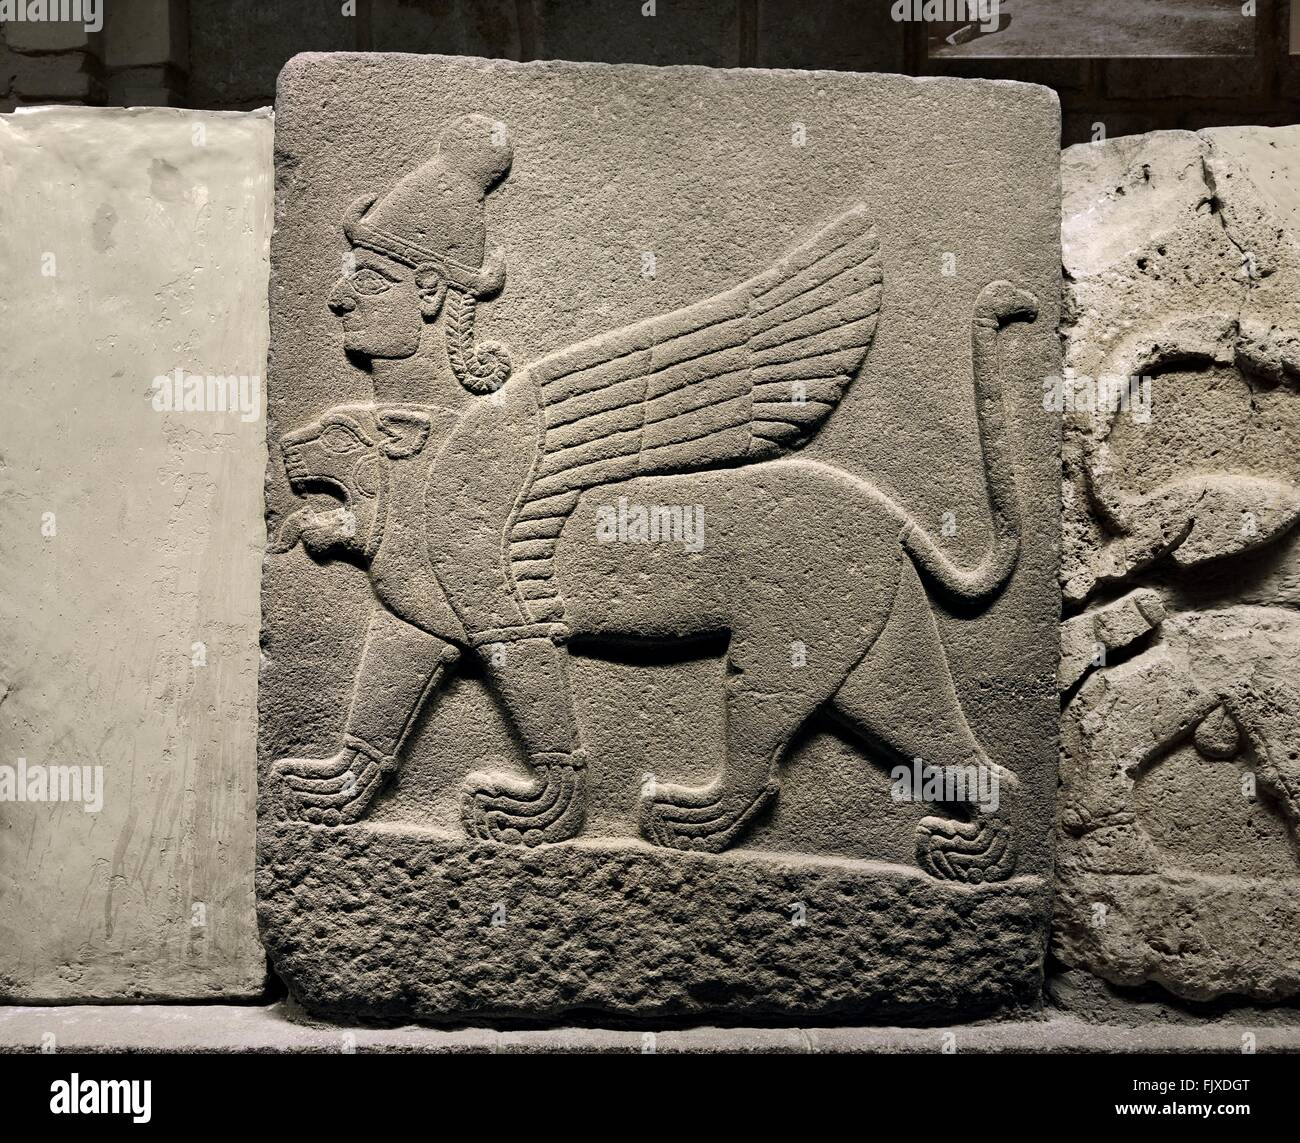 Hittite Stil unter der Leitung von Chimera 3 Sphinx. Schnitzen von Carchemish 21:00. Museum für Anatolische Zivilisationen, Ankara, Türkei Stockfoto